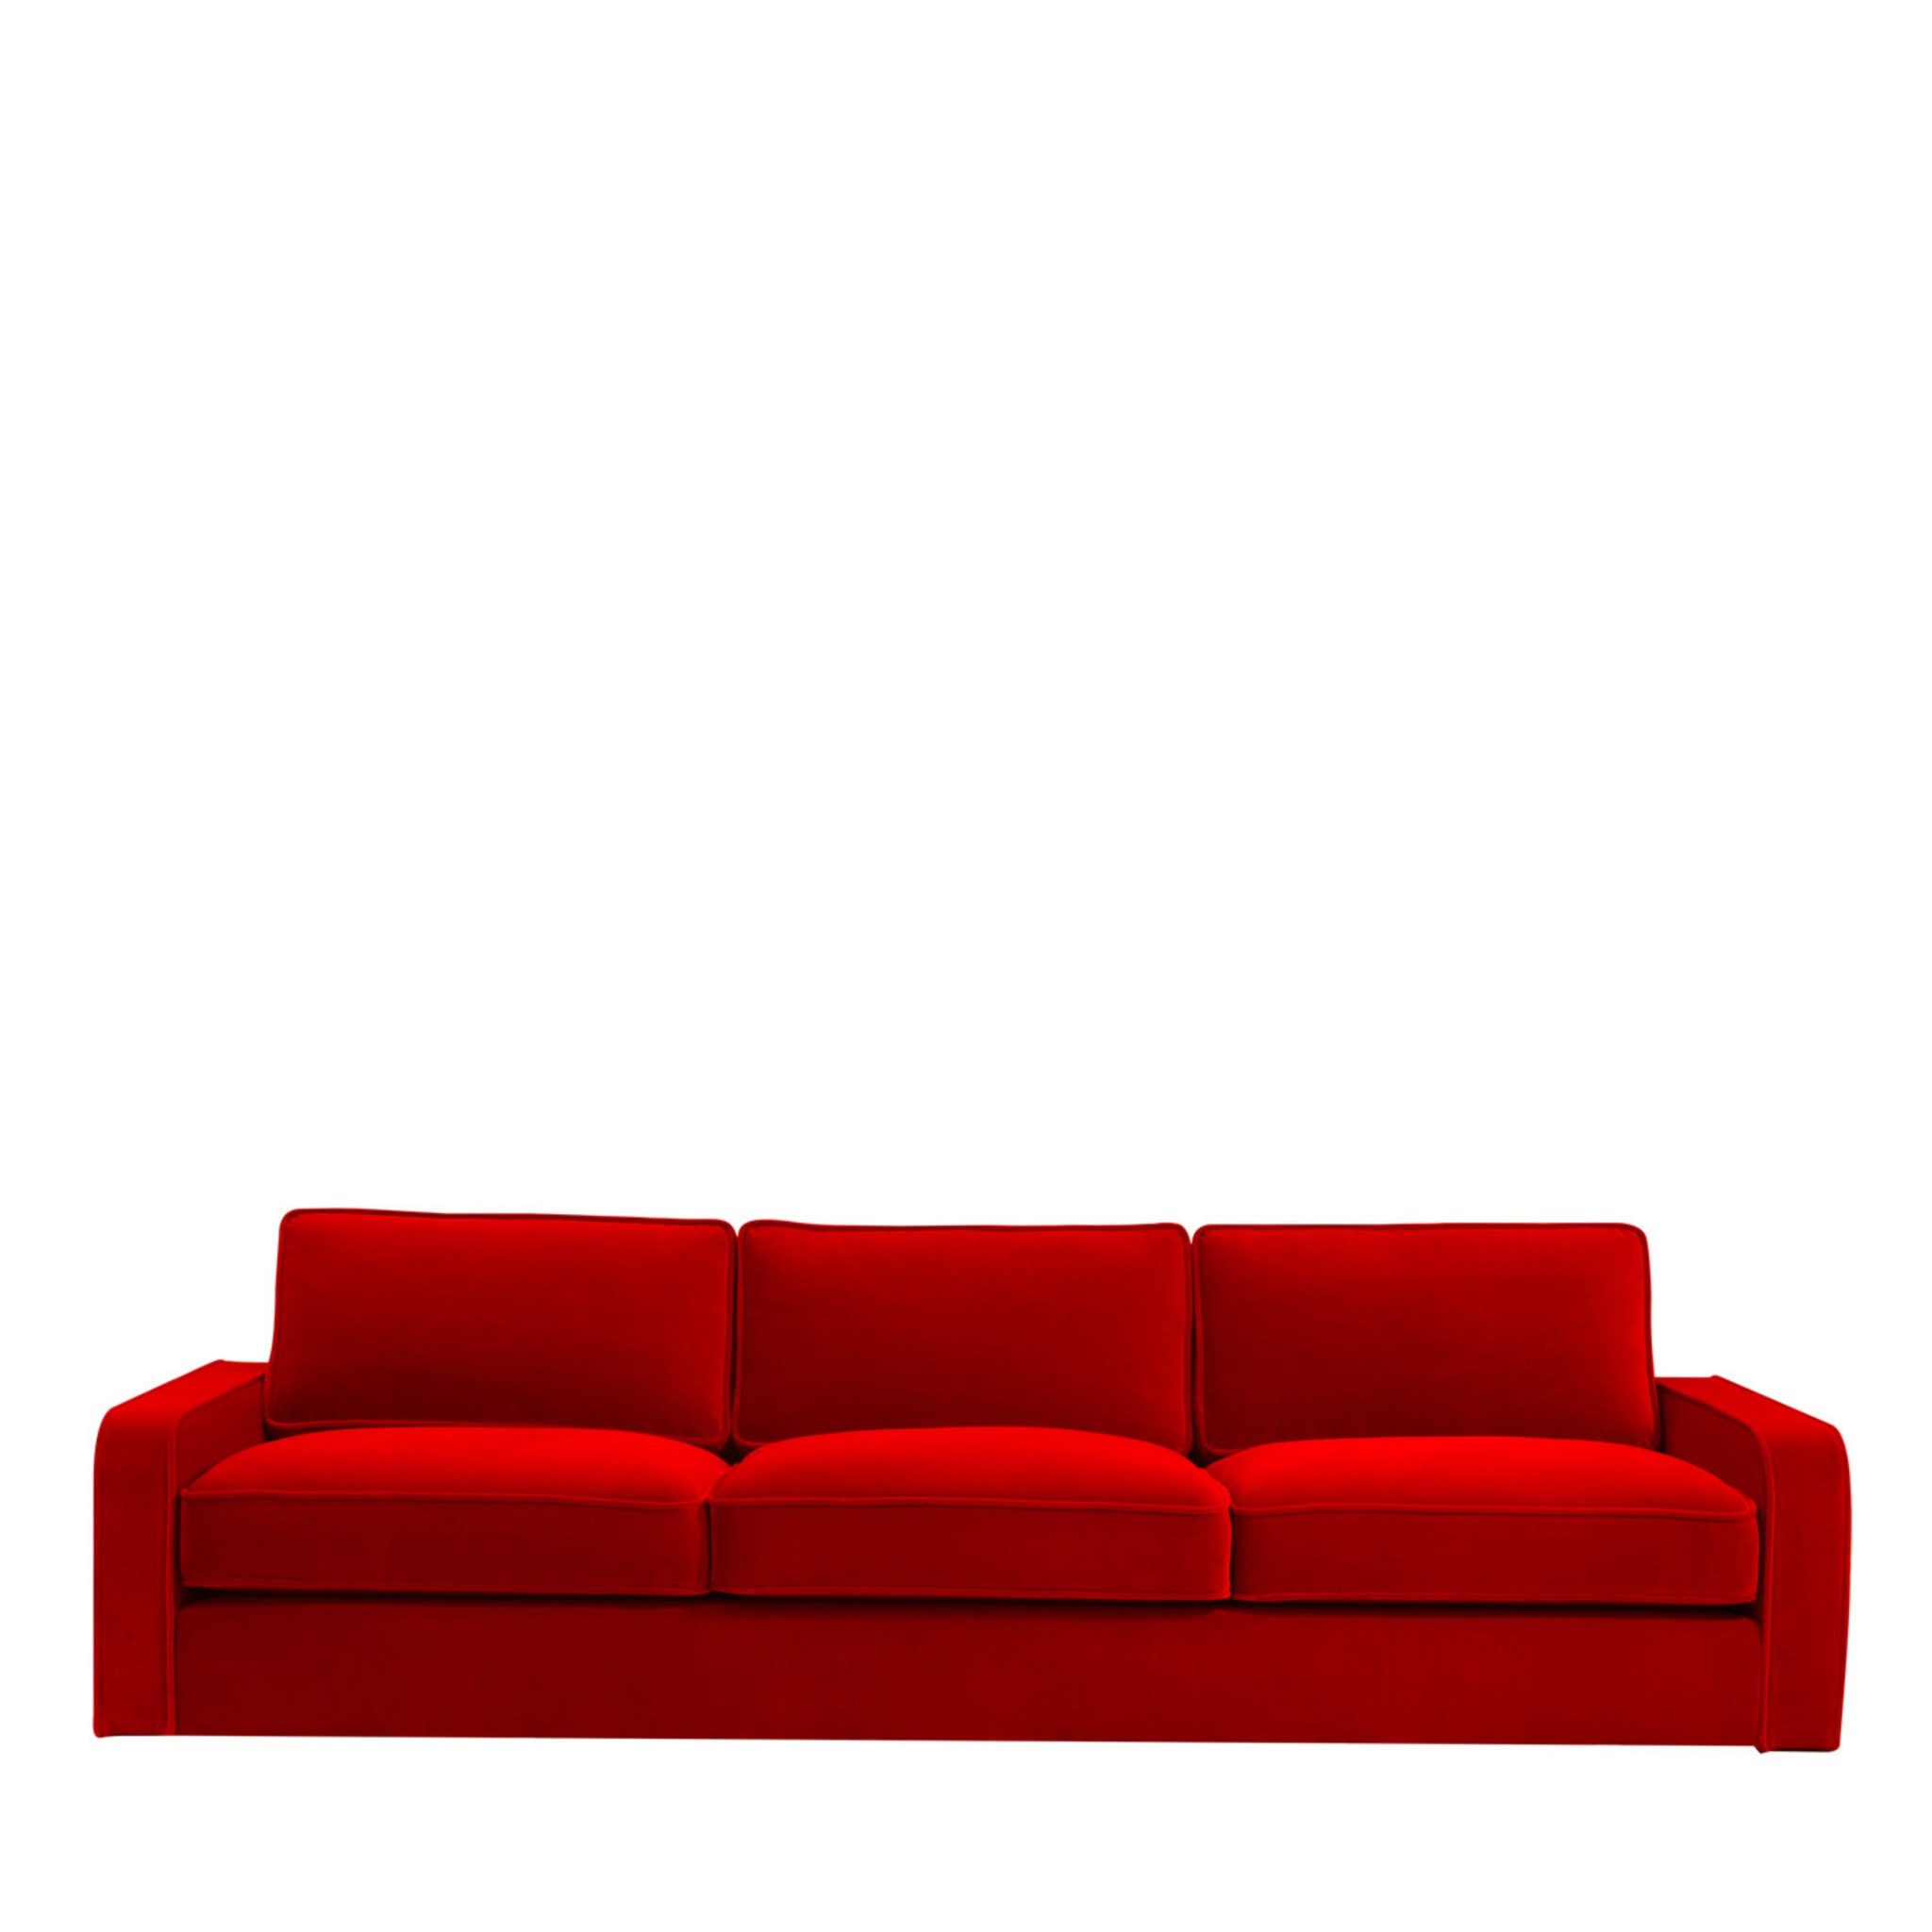 Romeo Rotes Sofa - Hauptansicht